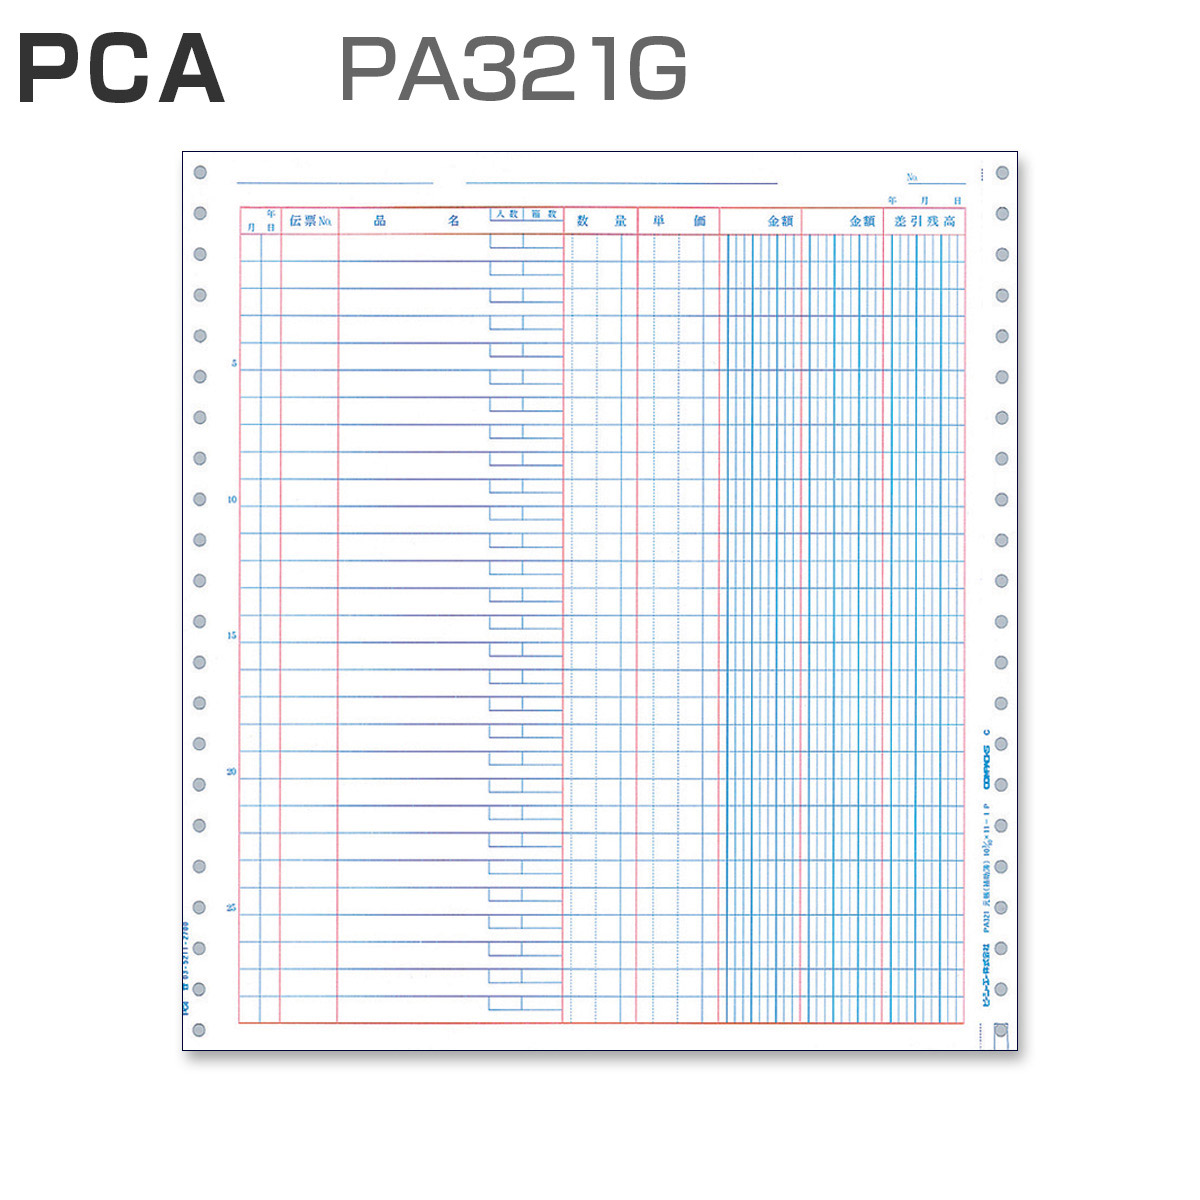 PCA PA321G 元帳 (500枚)